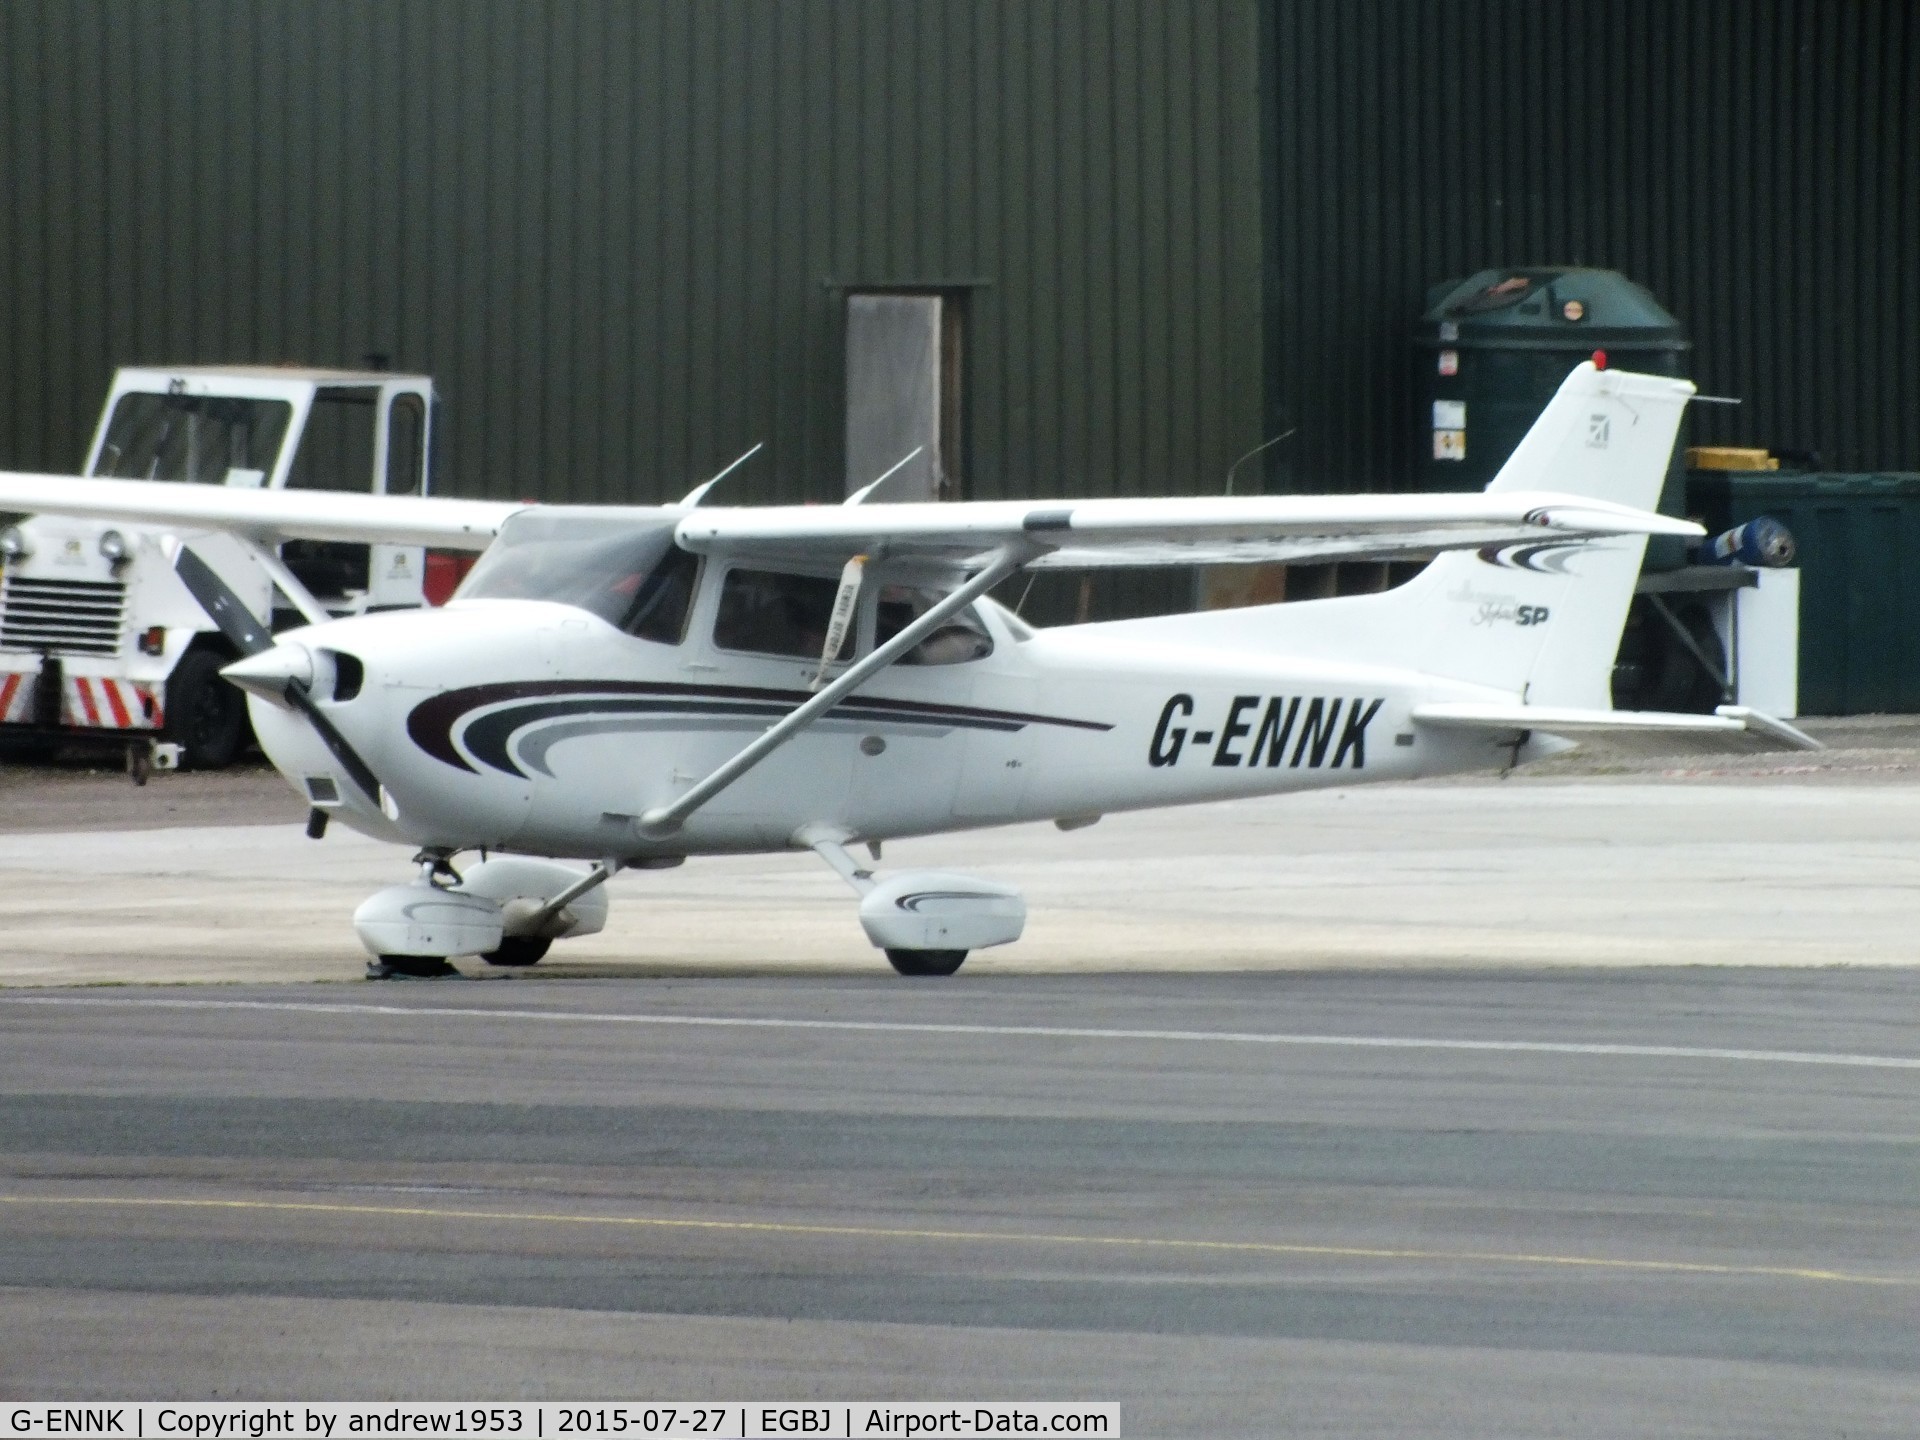 G-ENNK, 2000 Cessna 172S Skyhawk SP C/N 172S-8538, G-ENNK at Gloucestershire Airport.